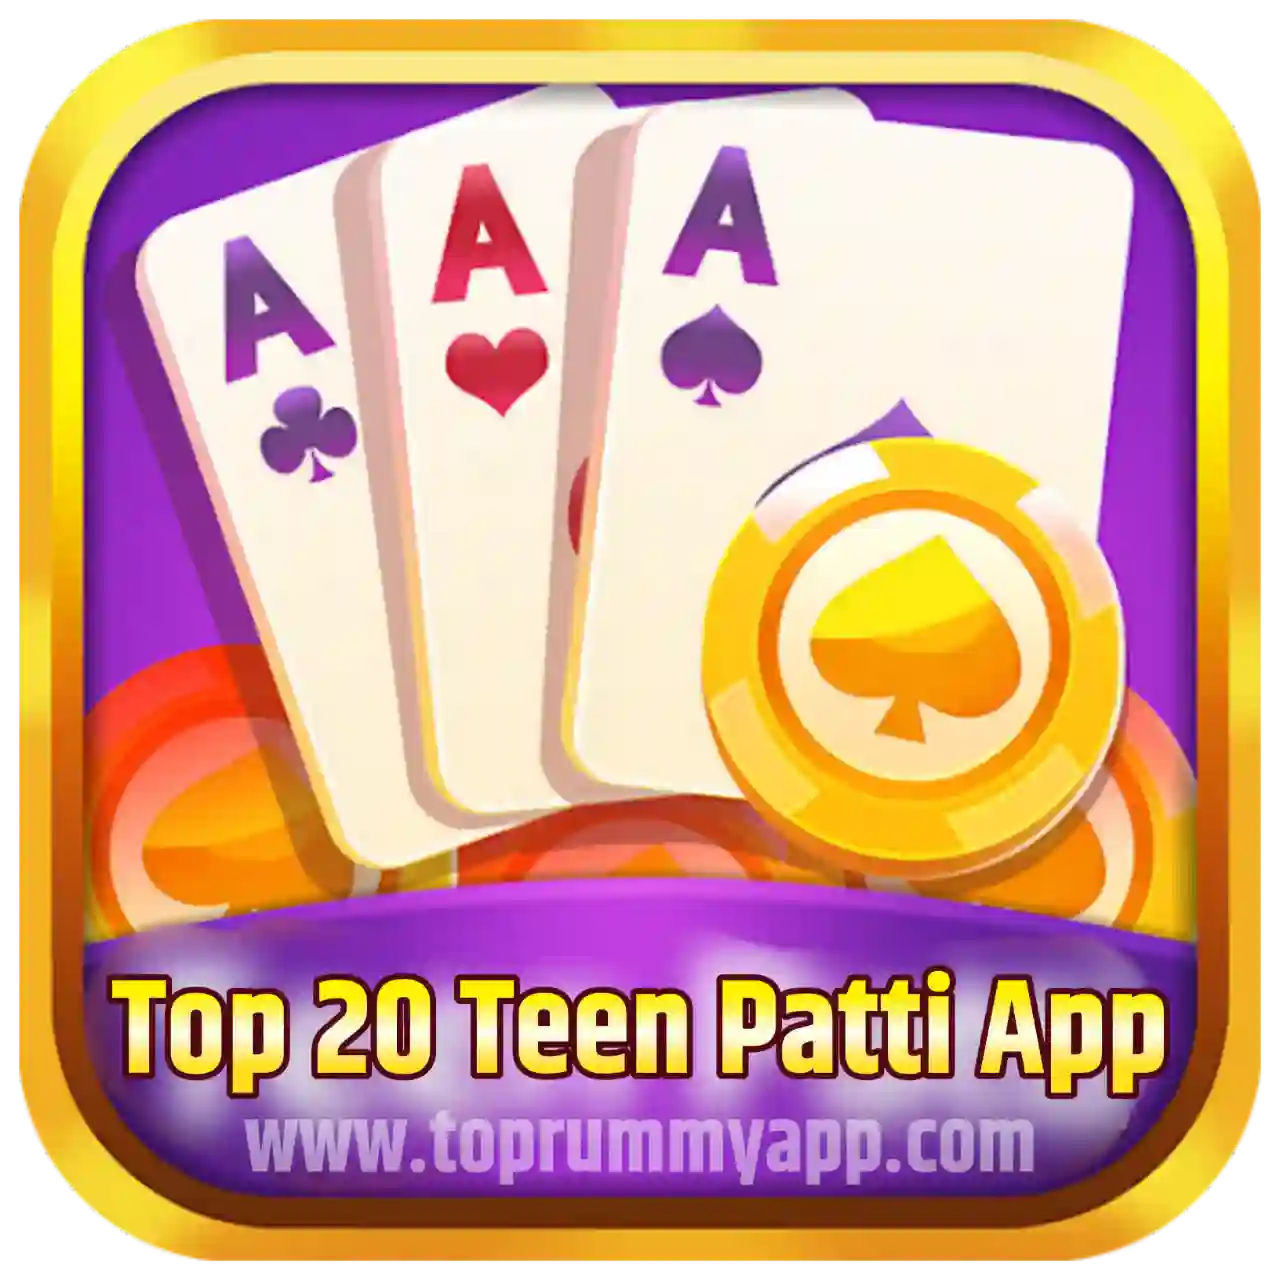 Top 20 Teen Patti App List - All Teen Patti App List ₹41 Bonus